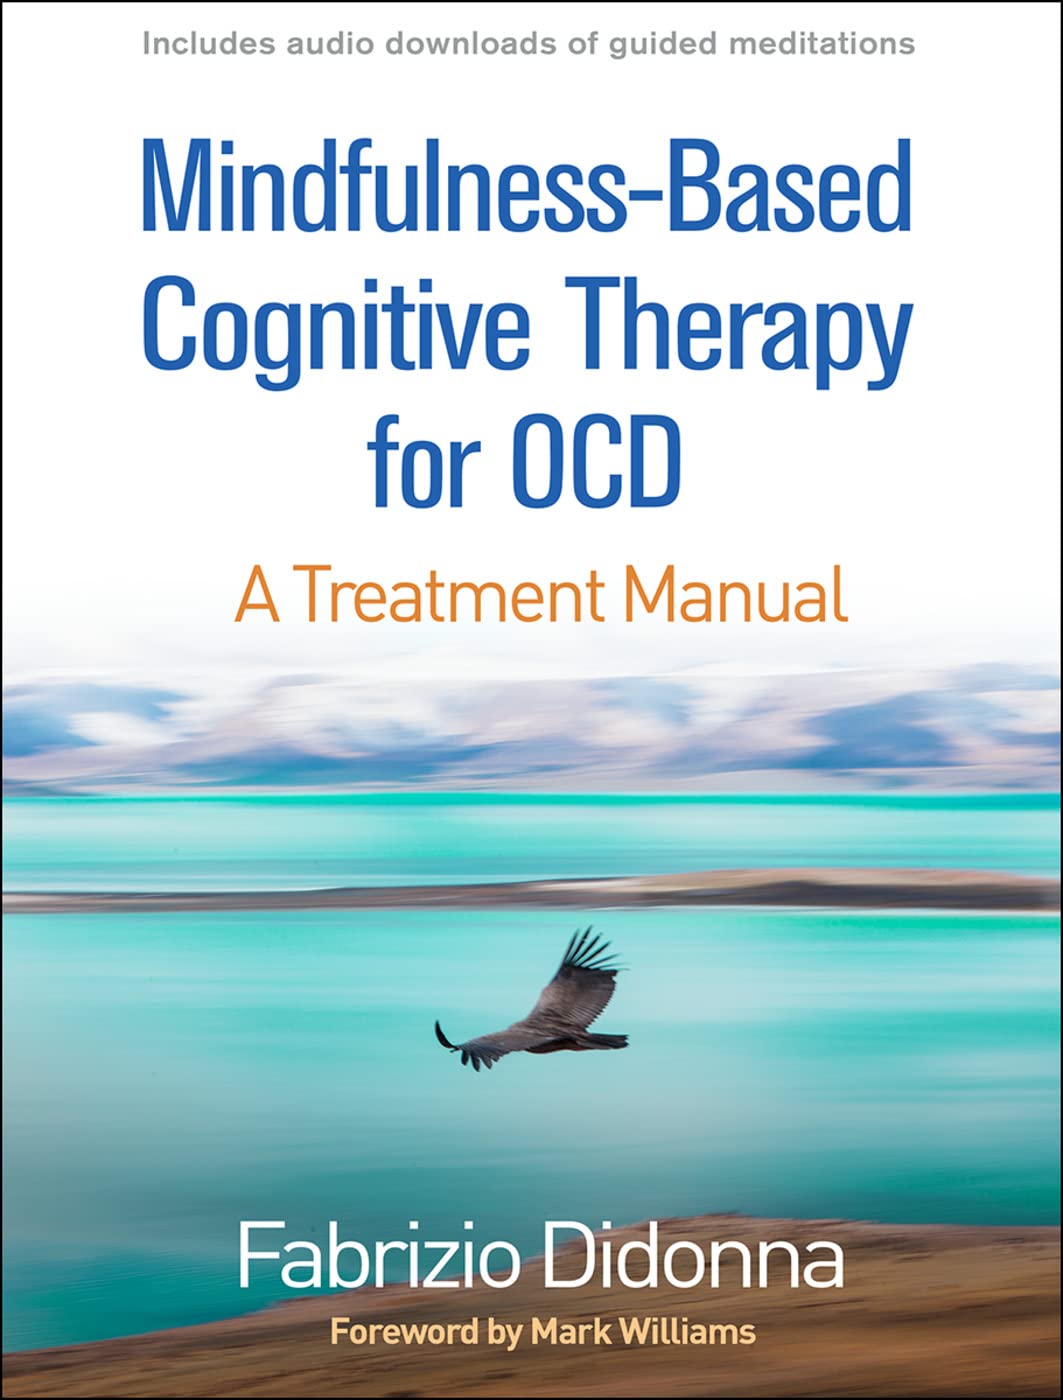 Libri Fabrizio Didonna - Mindfulness-Based Cognitive Therapy For Ocd NUOVO SIGILLATO, EDIZIONE DEL 18/12/2019 SUBITO DISPONIBILE